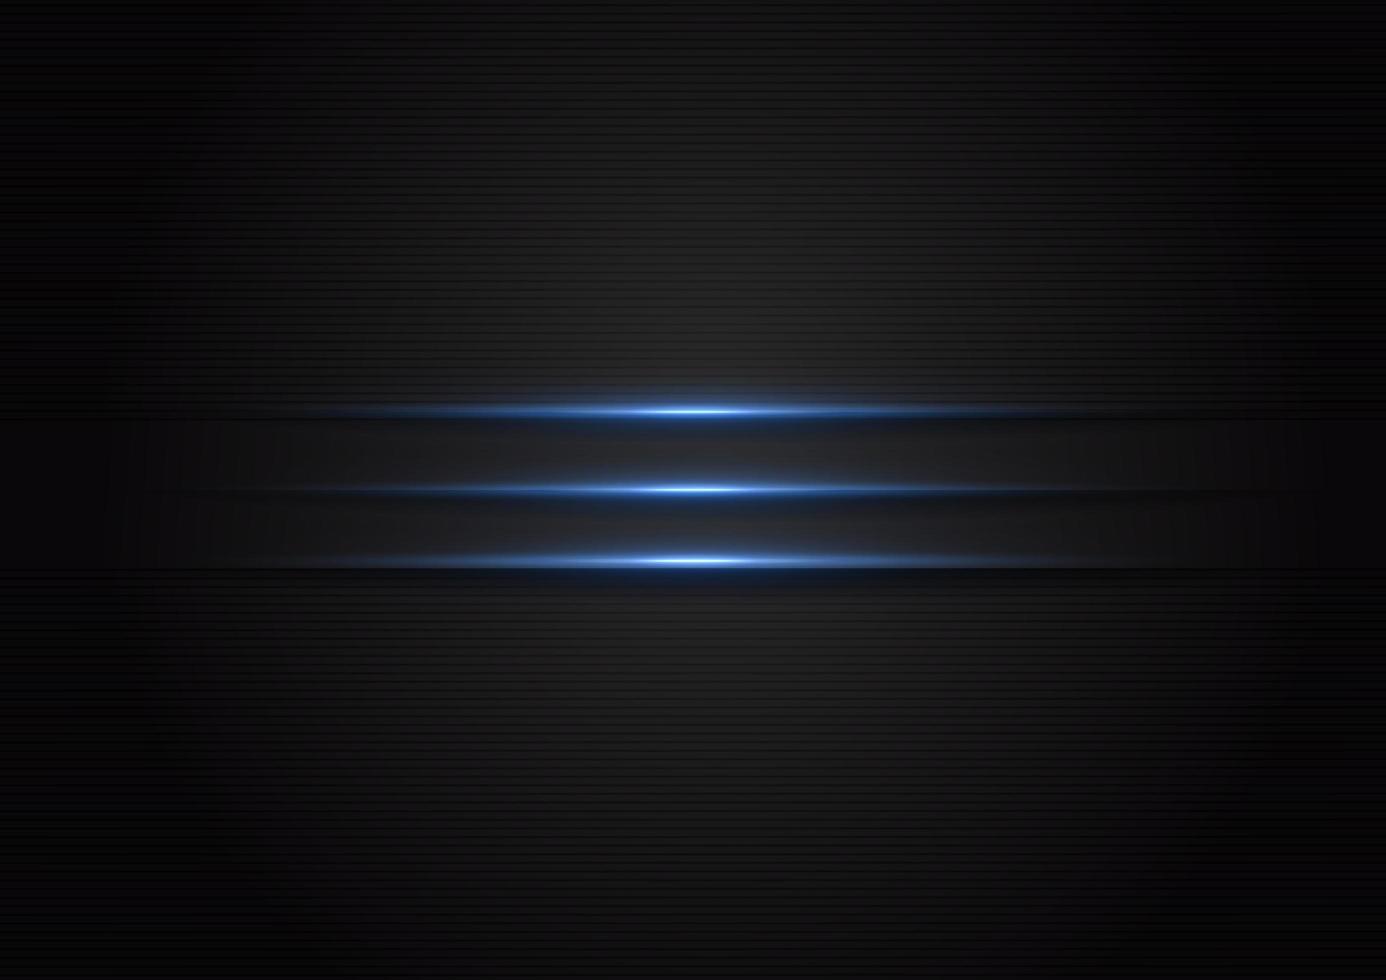 abstrakt horisontellblå ljuslinje på metallisk svart bakgrund med utrymme för text vektor